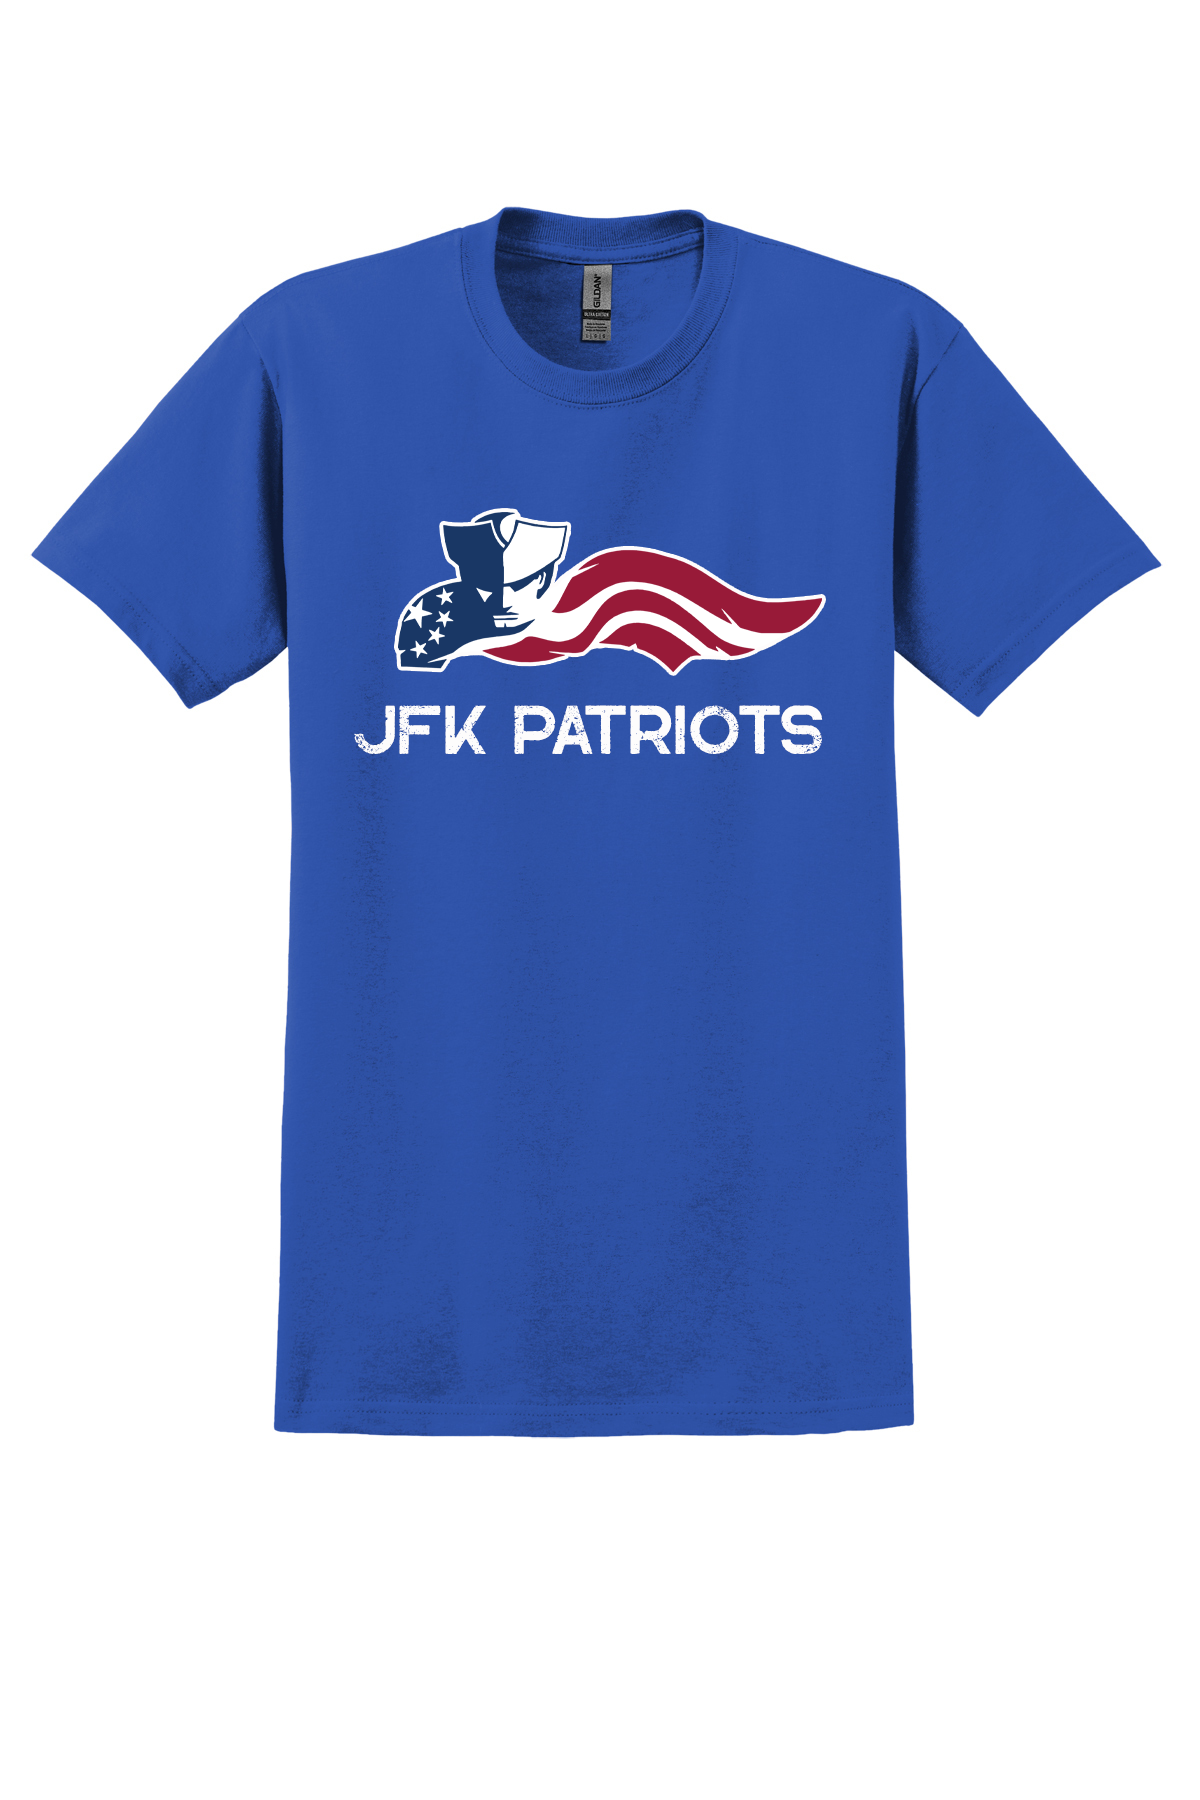 Mens/Unisex Soft touch cotton T-Shirt (JFK)